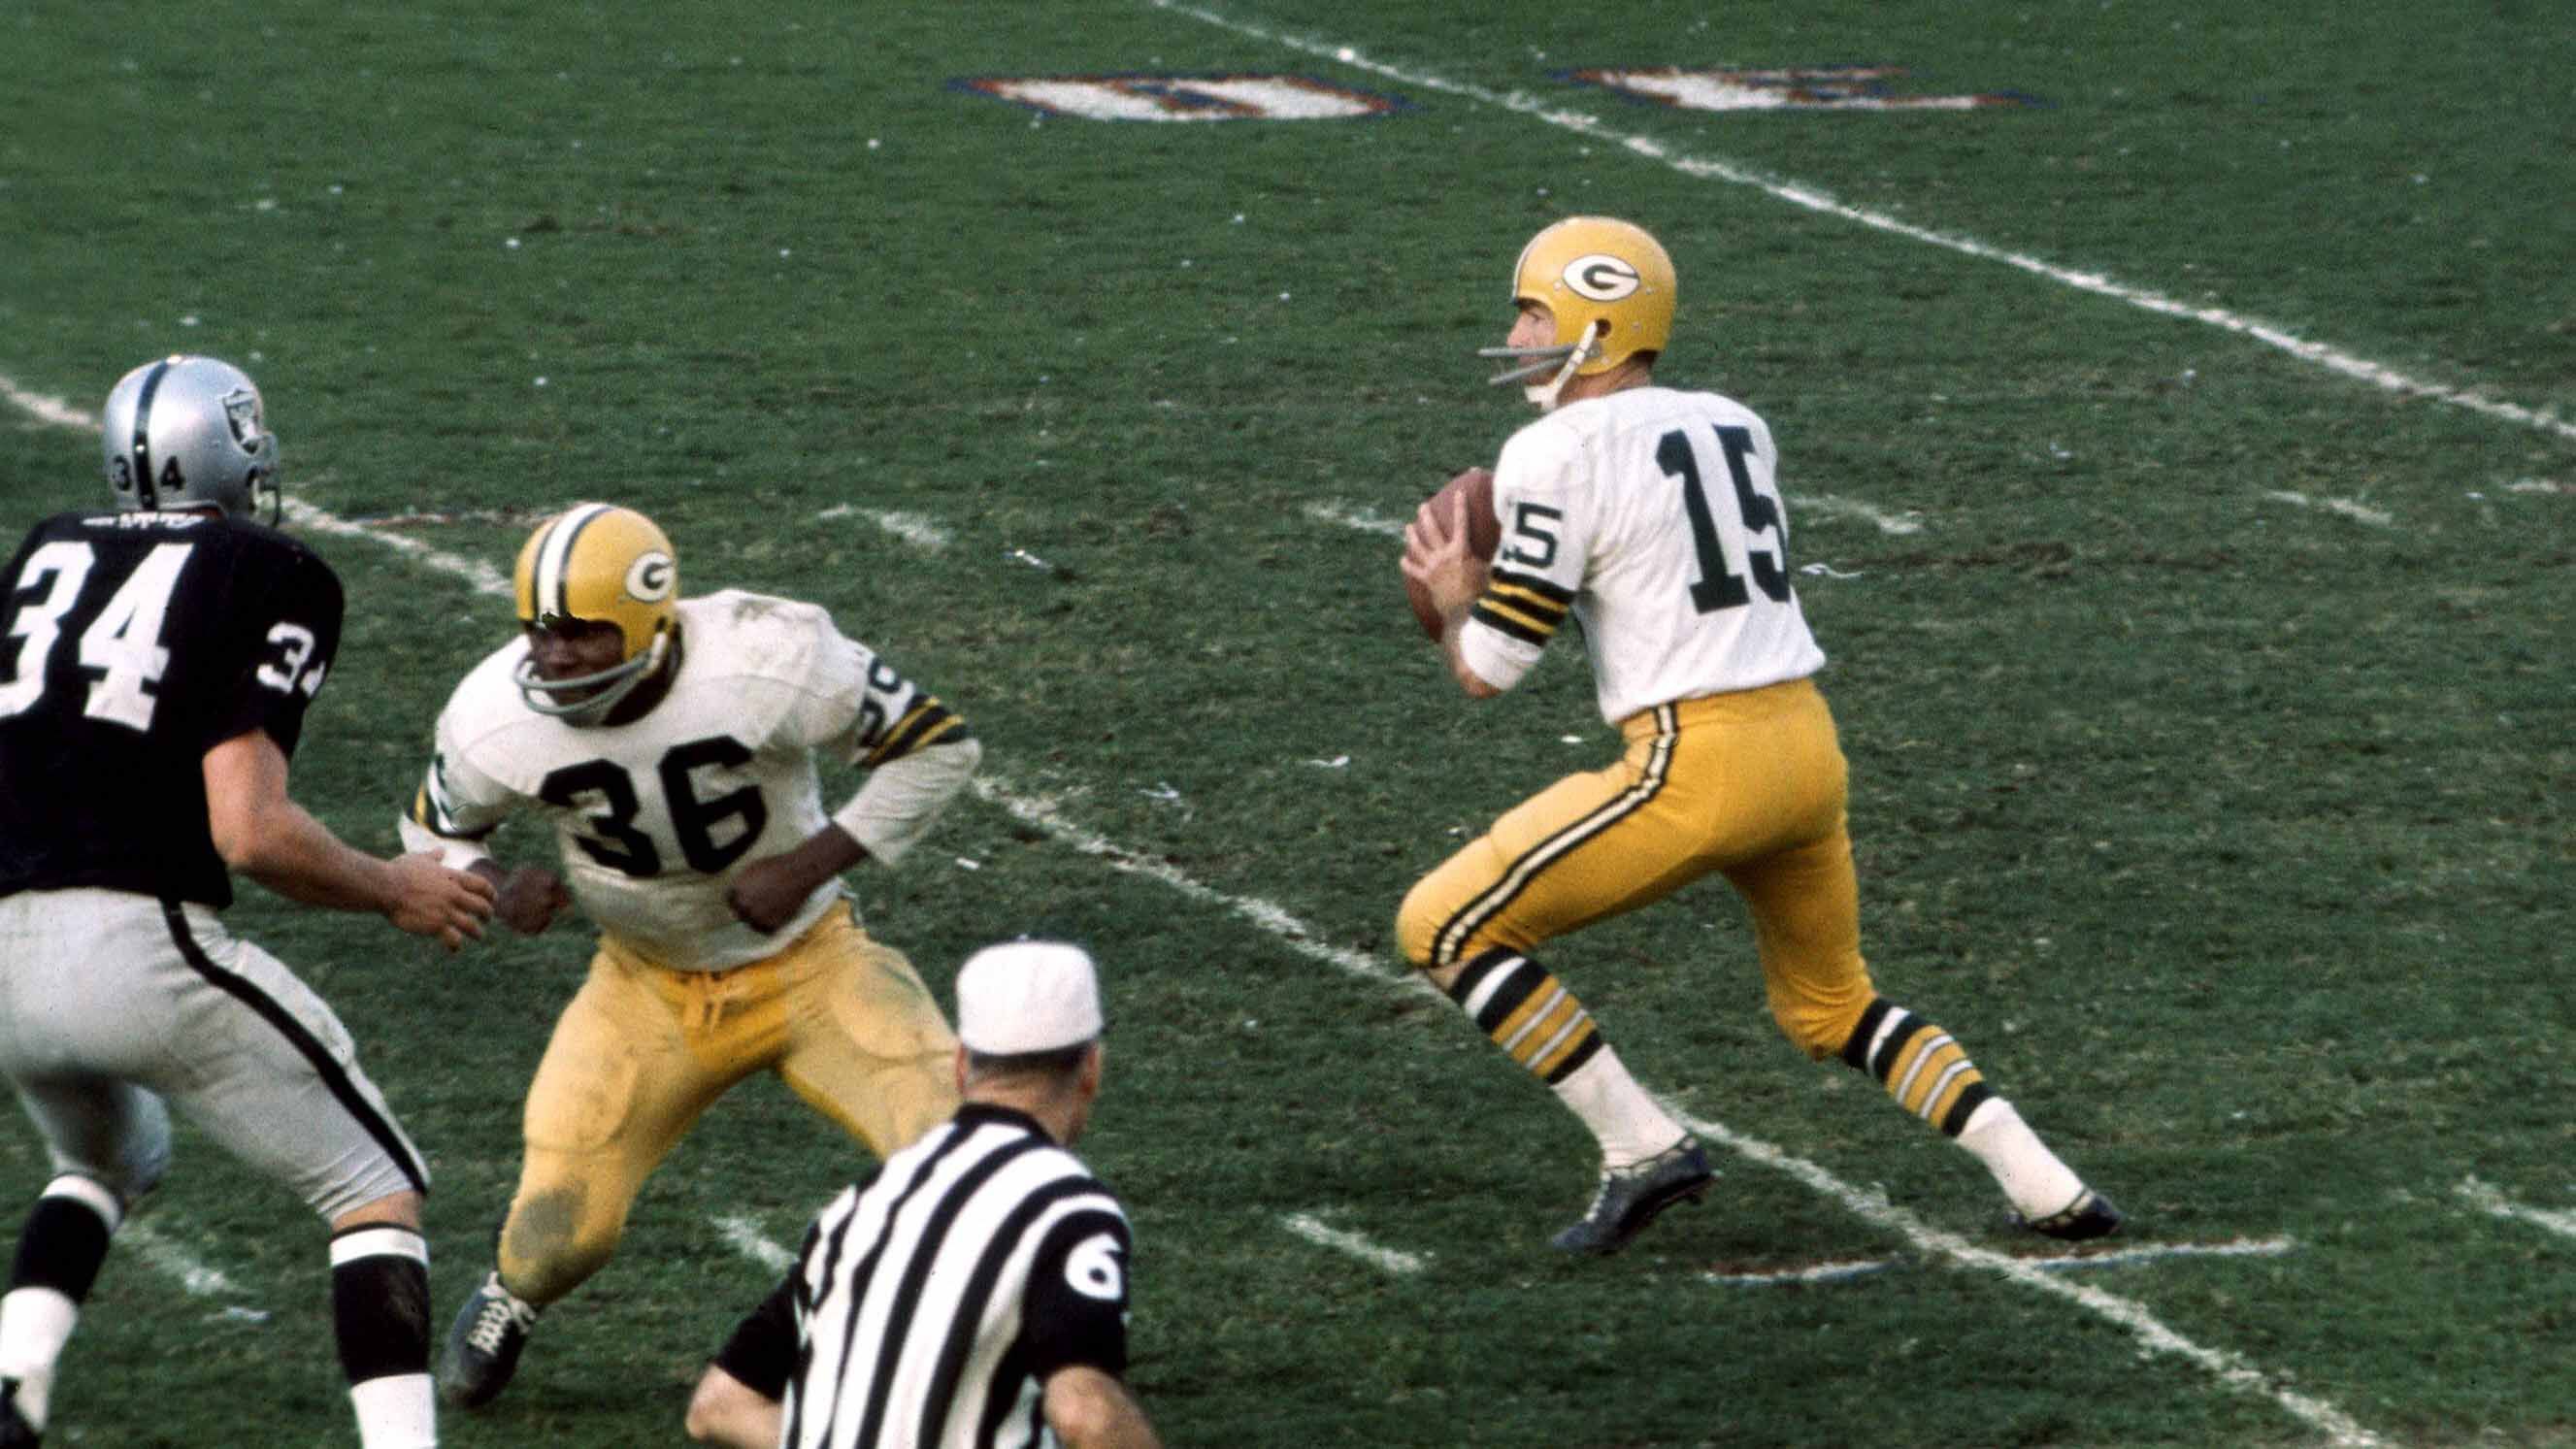 
                <strong>Bart Starr (1956 - 1971 / Green Bay Packers)</strong><br>
                Der wertvollste Spieler der ersten beiden Super-Bowl-Siege der Green Bay Packers, Bart Starr, ist ebenfalls nicht dabei. Mit Pick Nummer 200 im NFL-Draft 1956 ausgewählt, gewann der mittlerweile verstorbene Starr trotzdem insgesamt fünf NFL-Meisterschaften mit den Packers. Aufgrund seiner Errungenschaften für die Franchise wird die Nummer 15 in Green Bay nicht mehr vergeben.
              